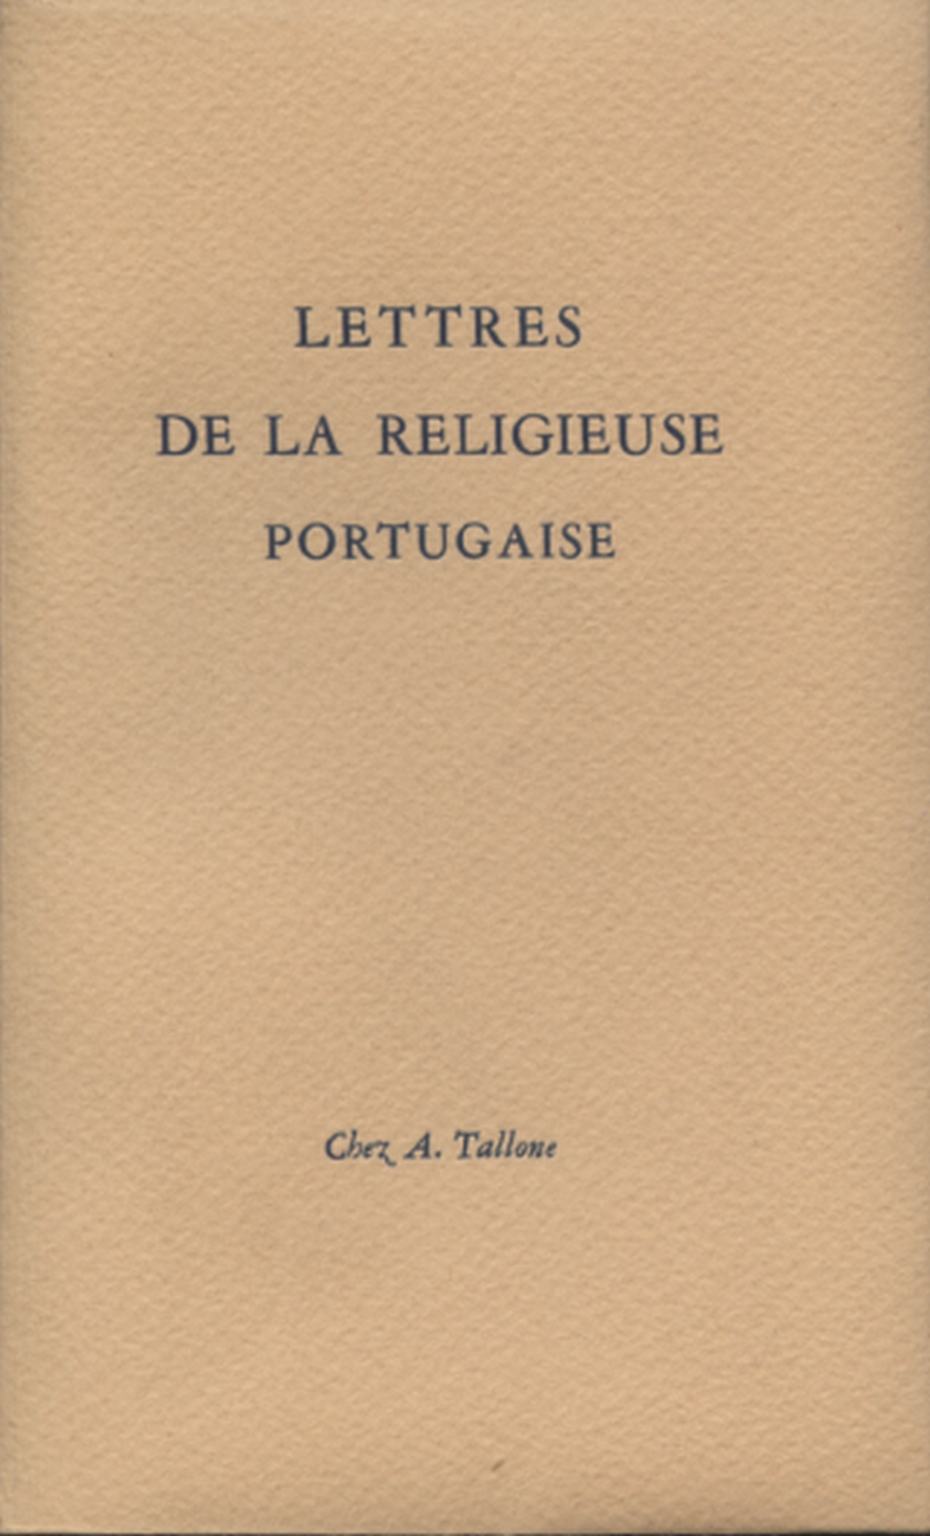 Lettres de la religieuse akteur portugiesische, s.zu.